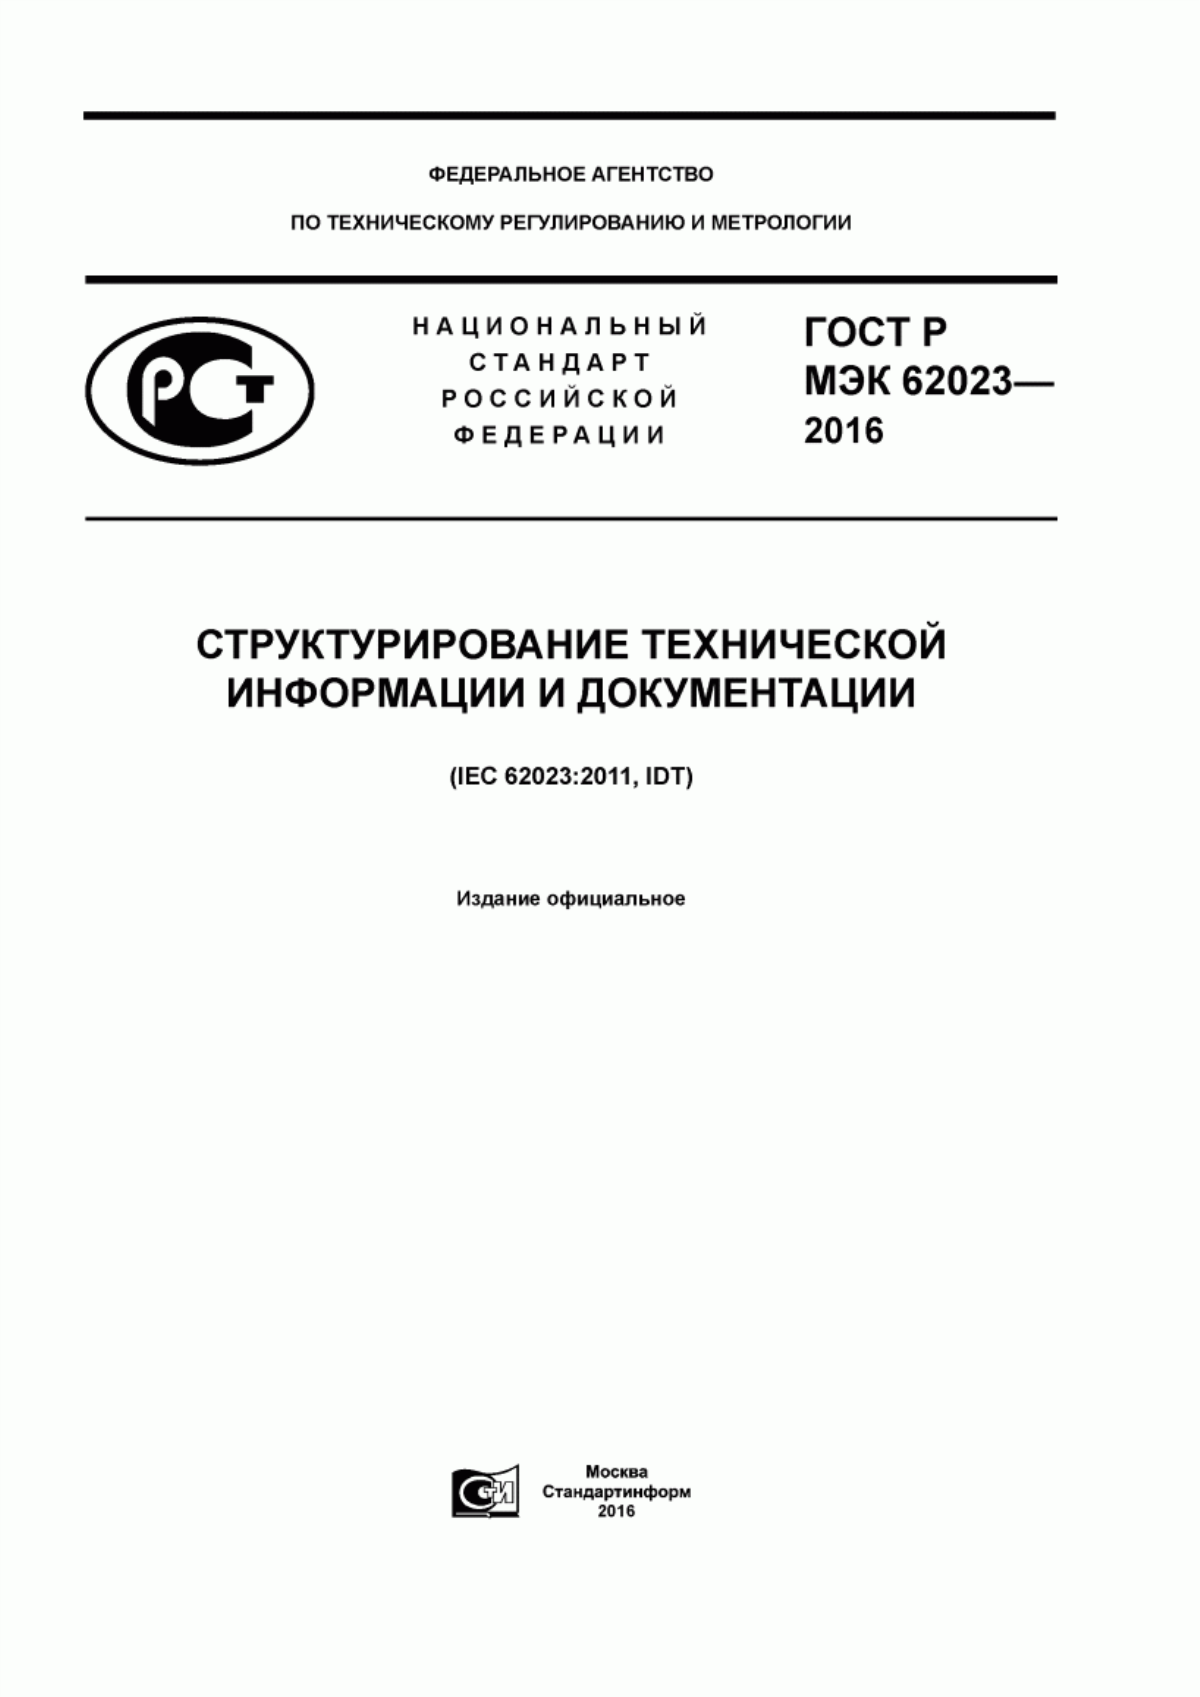 ГОСТ Р МЭК 62023-2016 Структурирование технической информации и документации